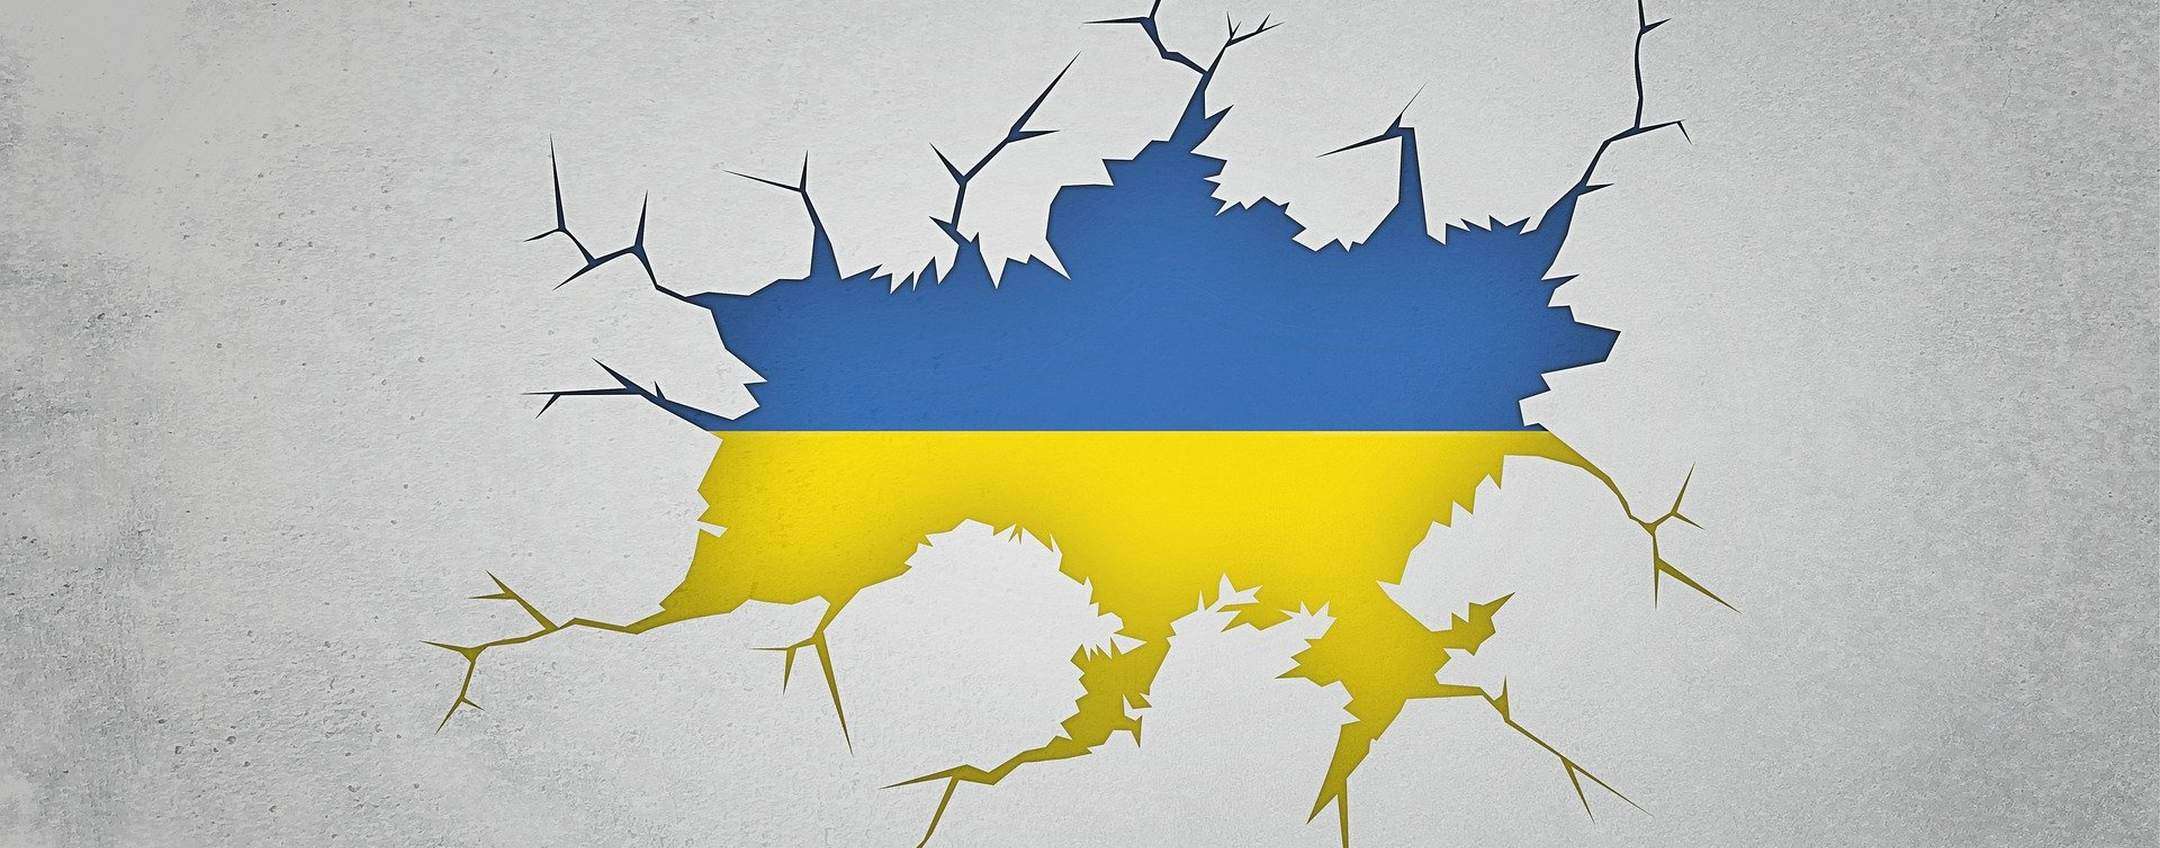 Ucraina: cyberattacco combinato ransomware/wiper